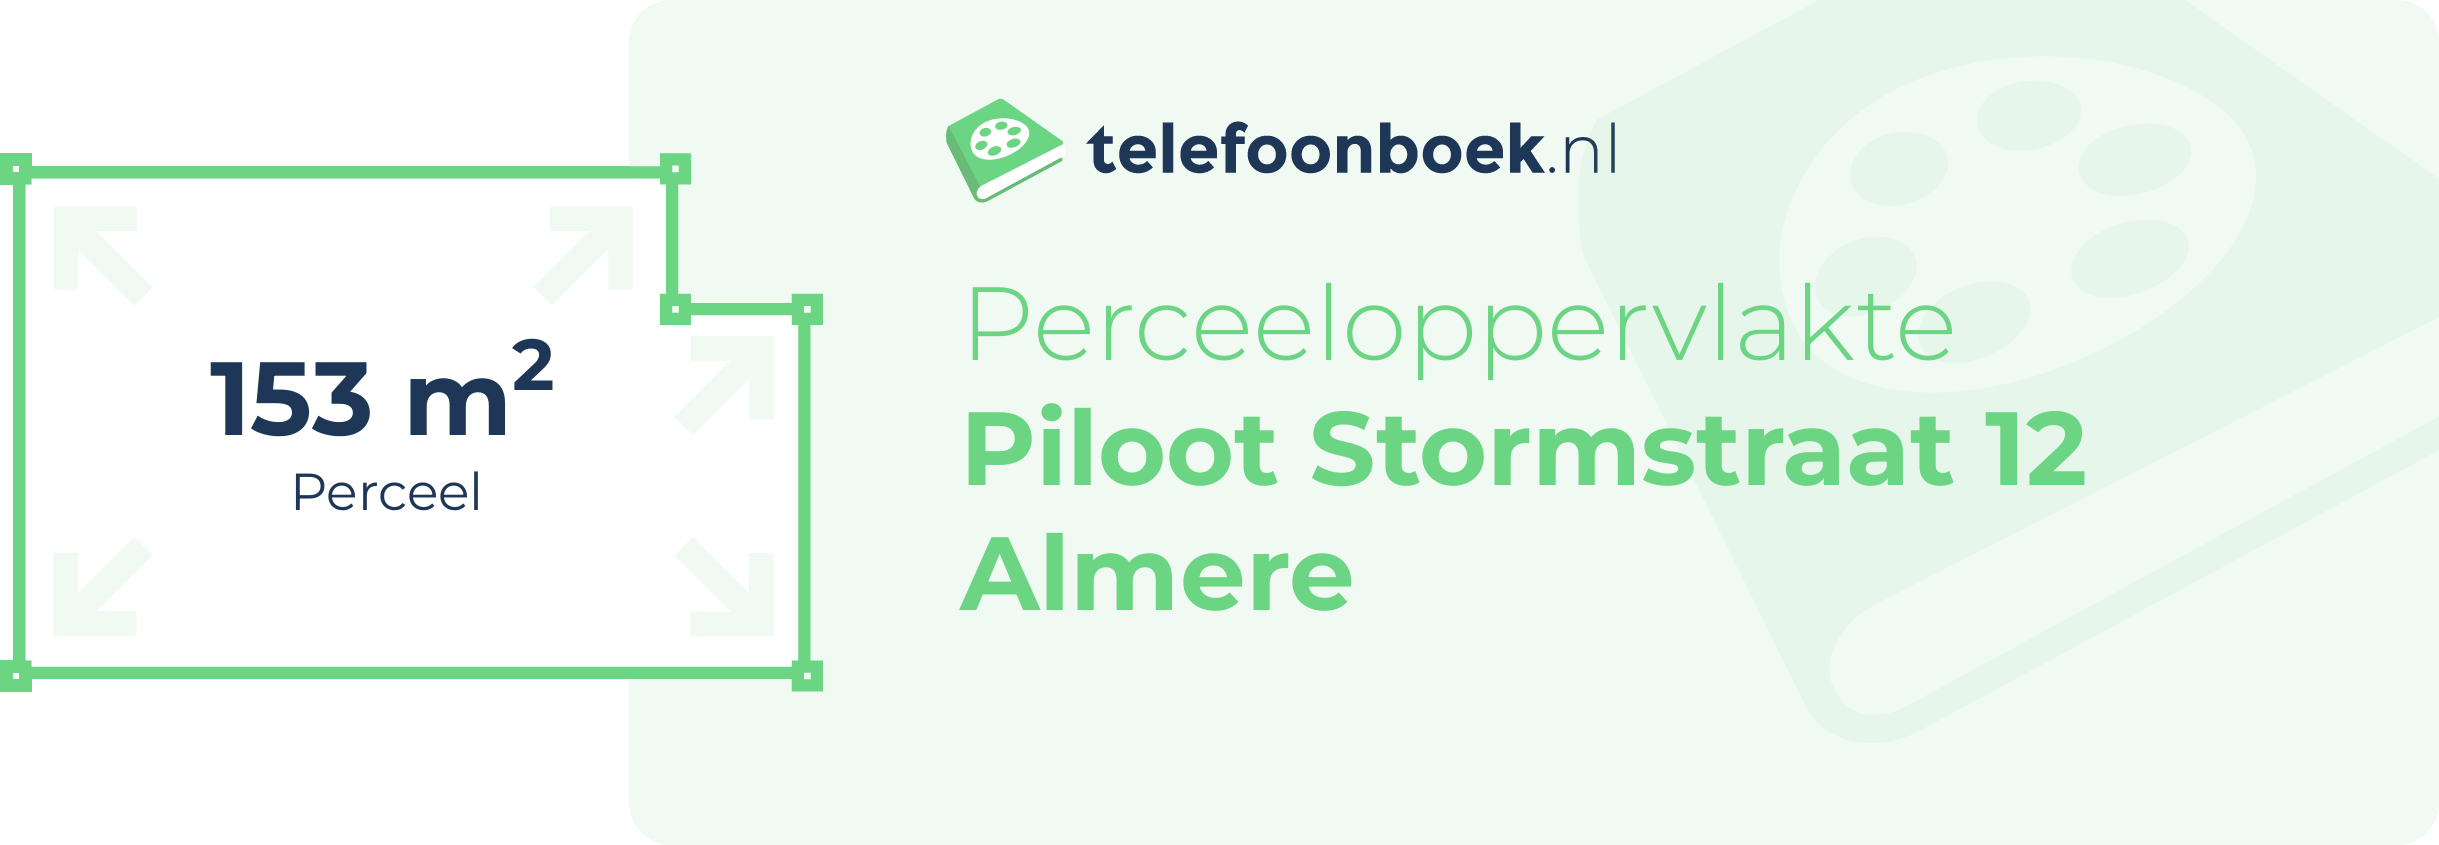 Perceeloppervlakte Piloot Stormstraat 12 Almere